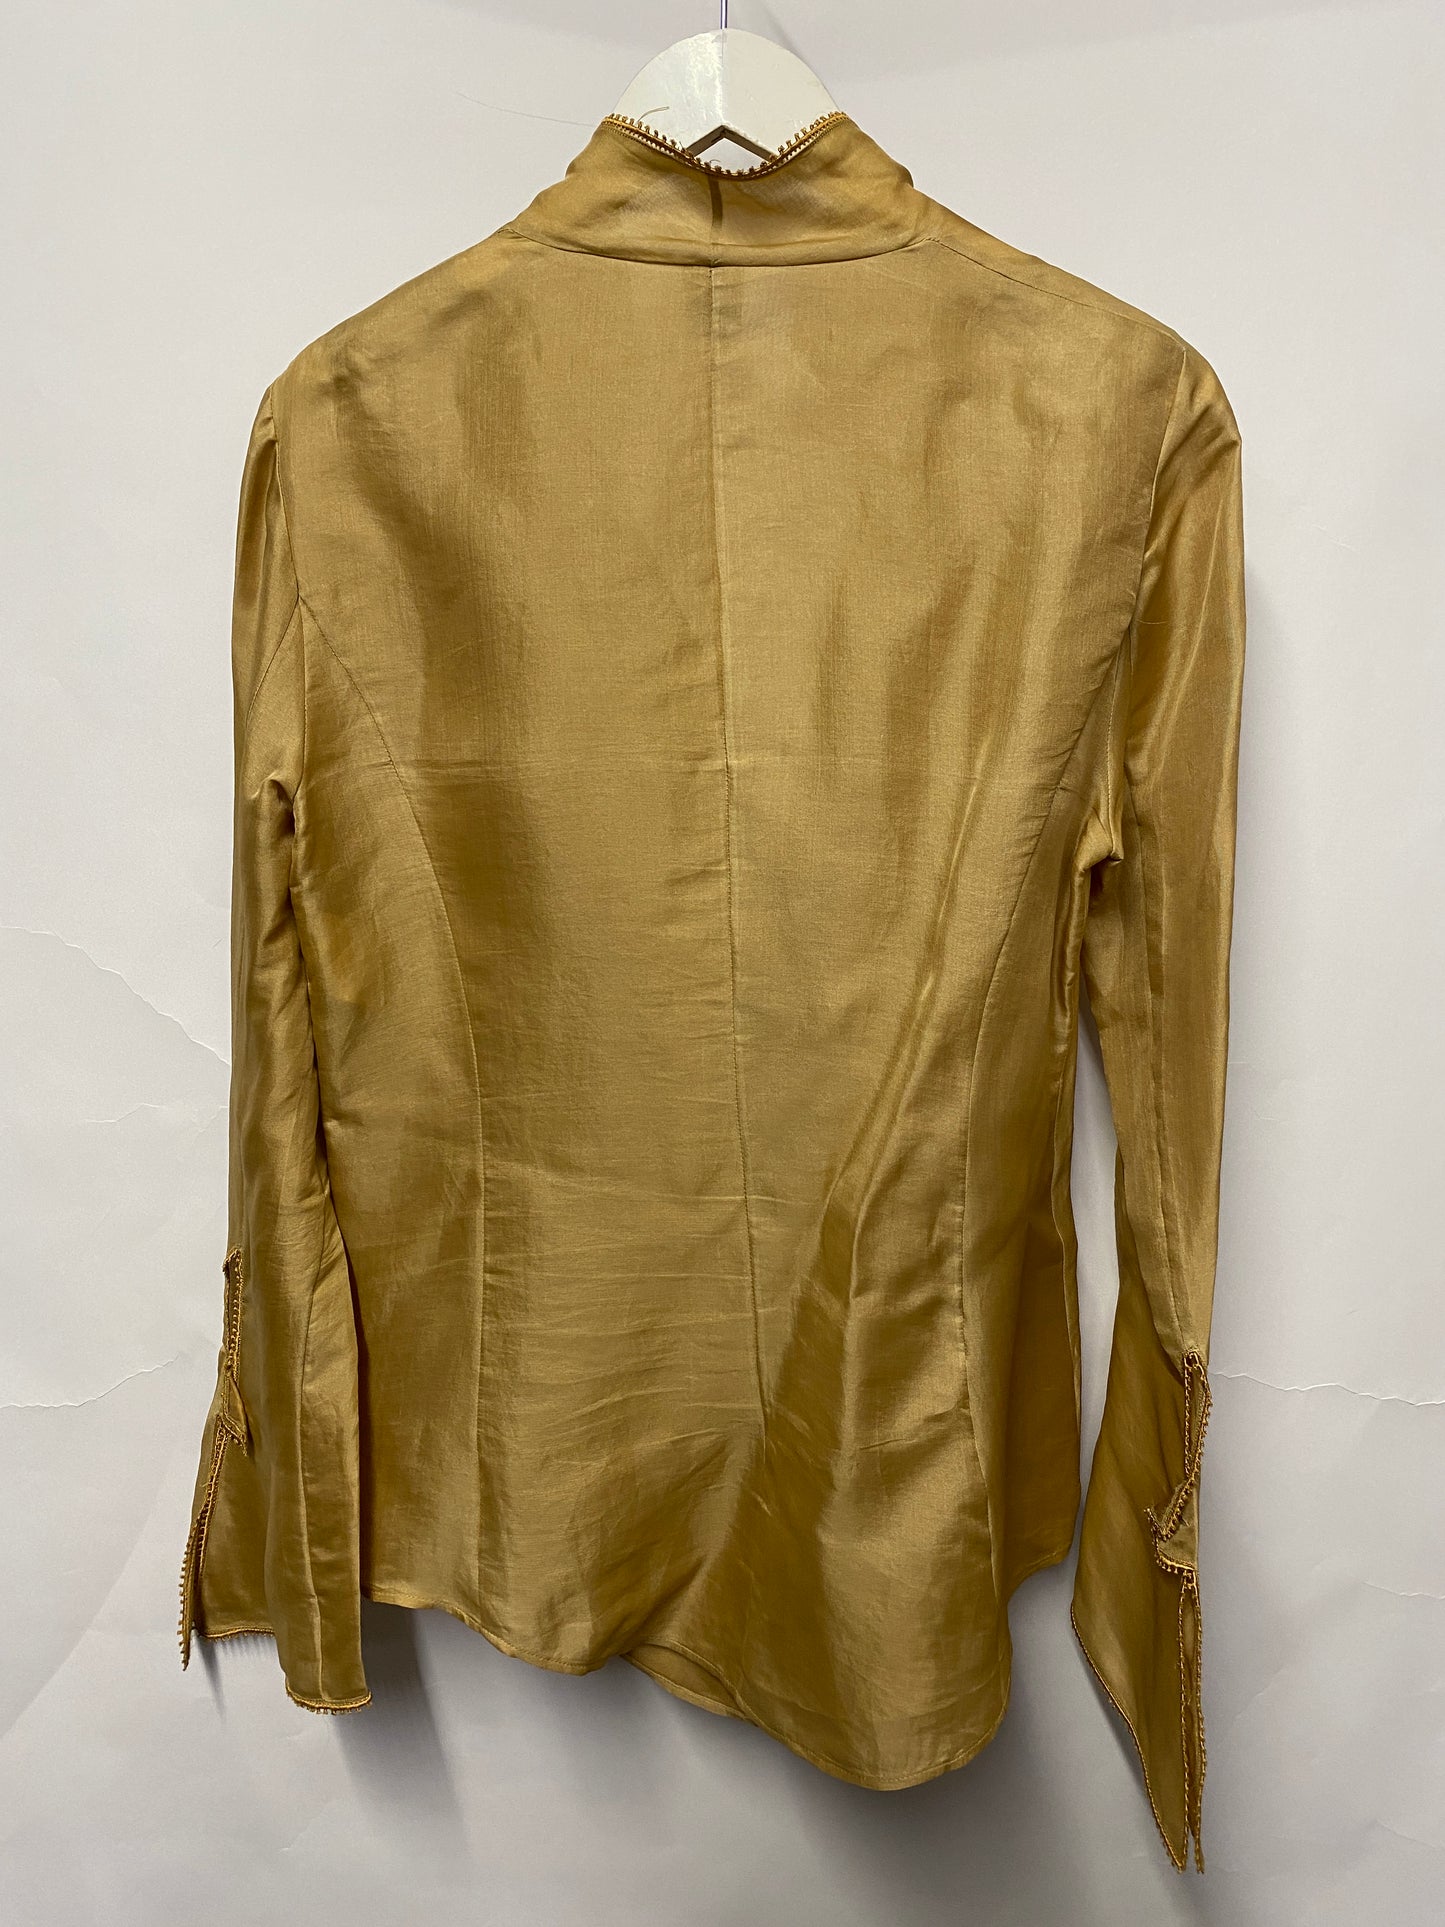 Gianfranco Ferre Tan Silk Shirt 12